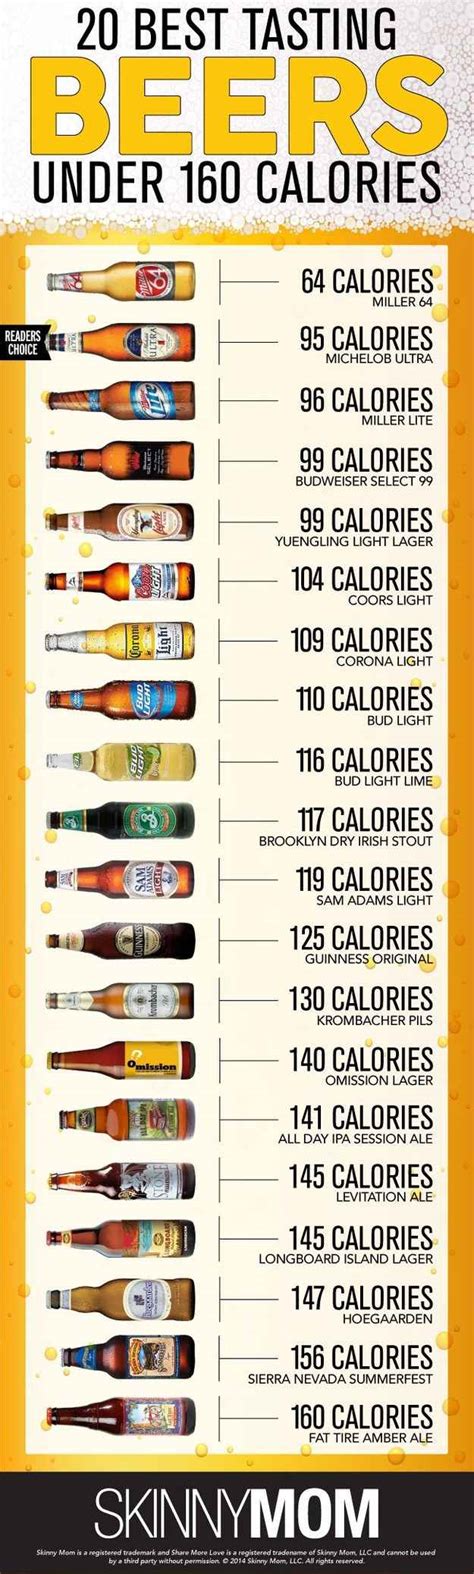 17 Diagrams To Help You Get Turnt Low Calorie Beer Beer Tasting Beer